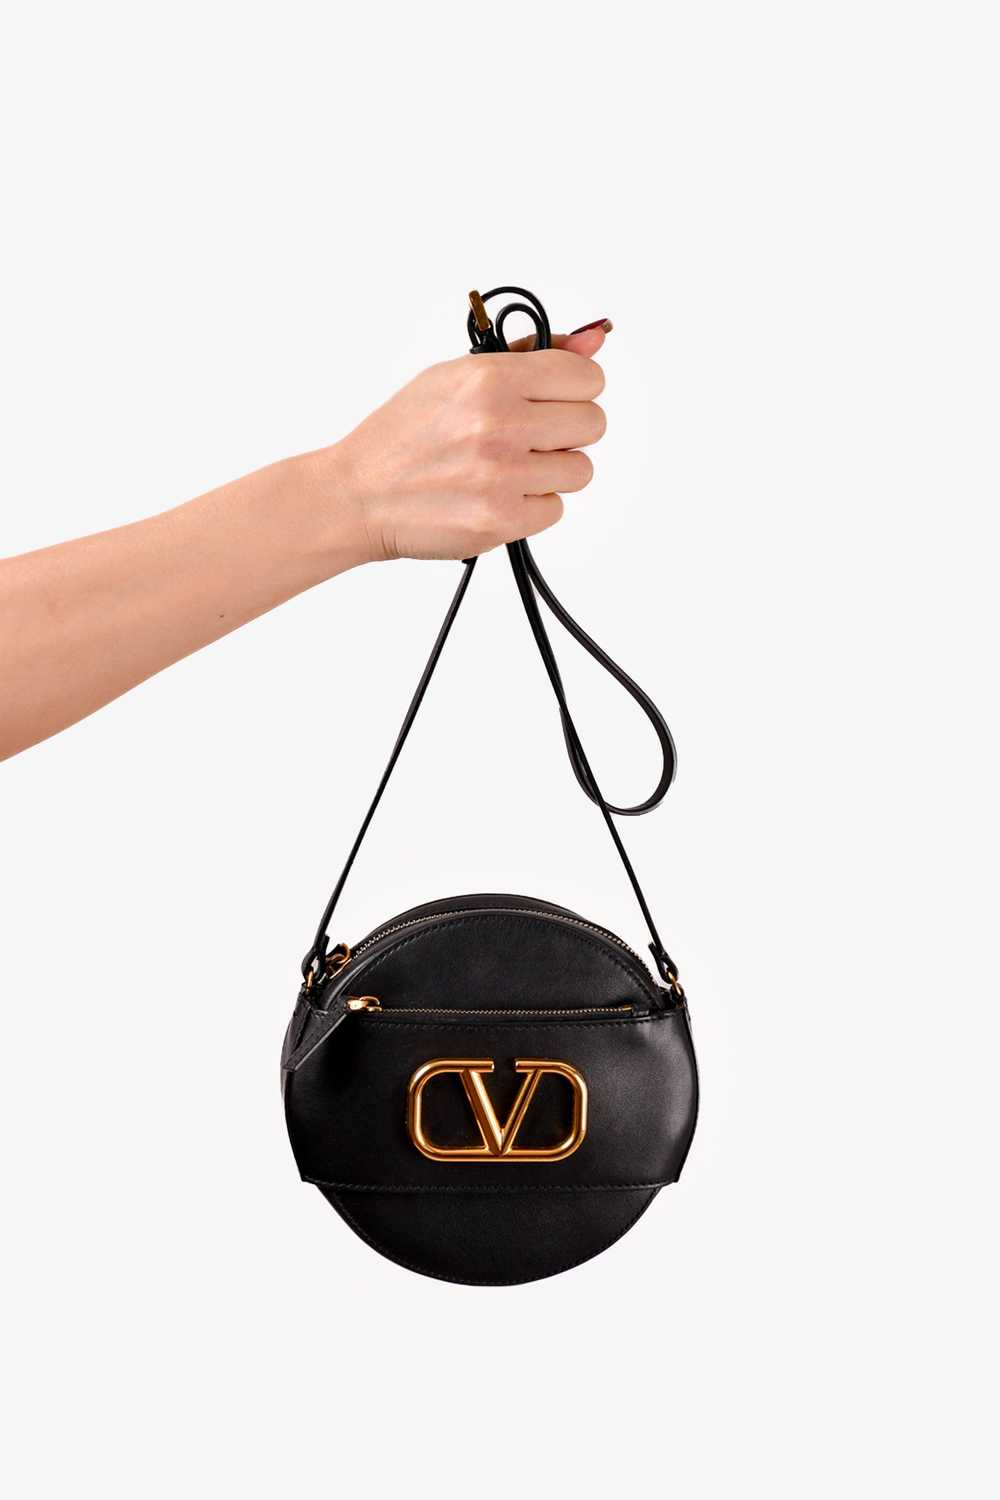 Valentino Black Leather Round V-Logo Crossbody Bag - image 4